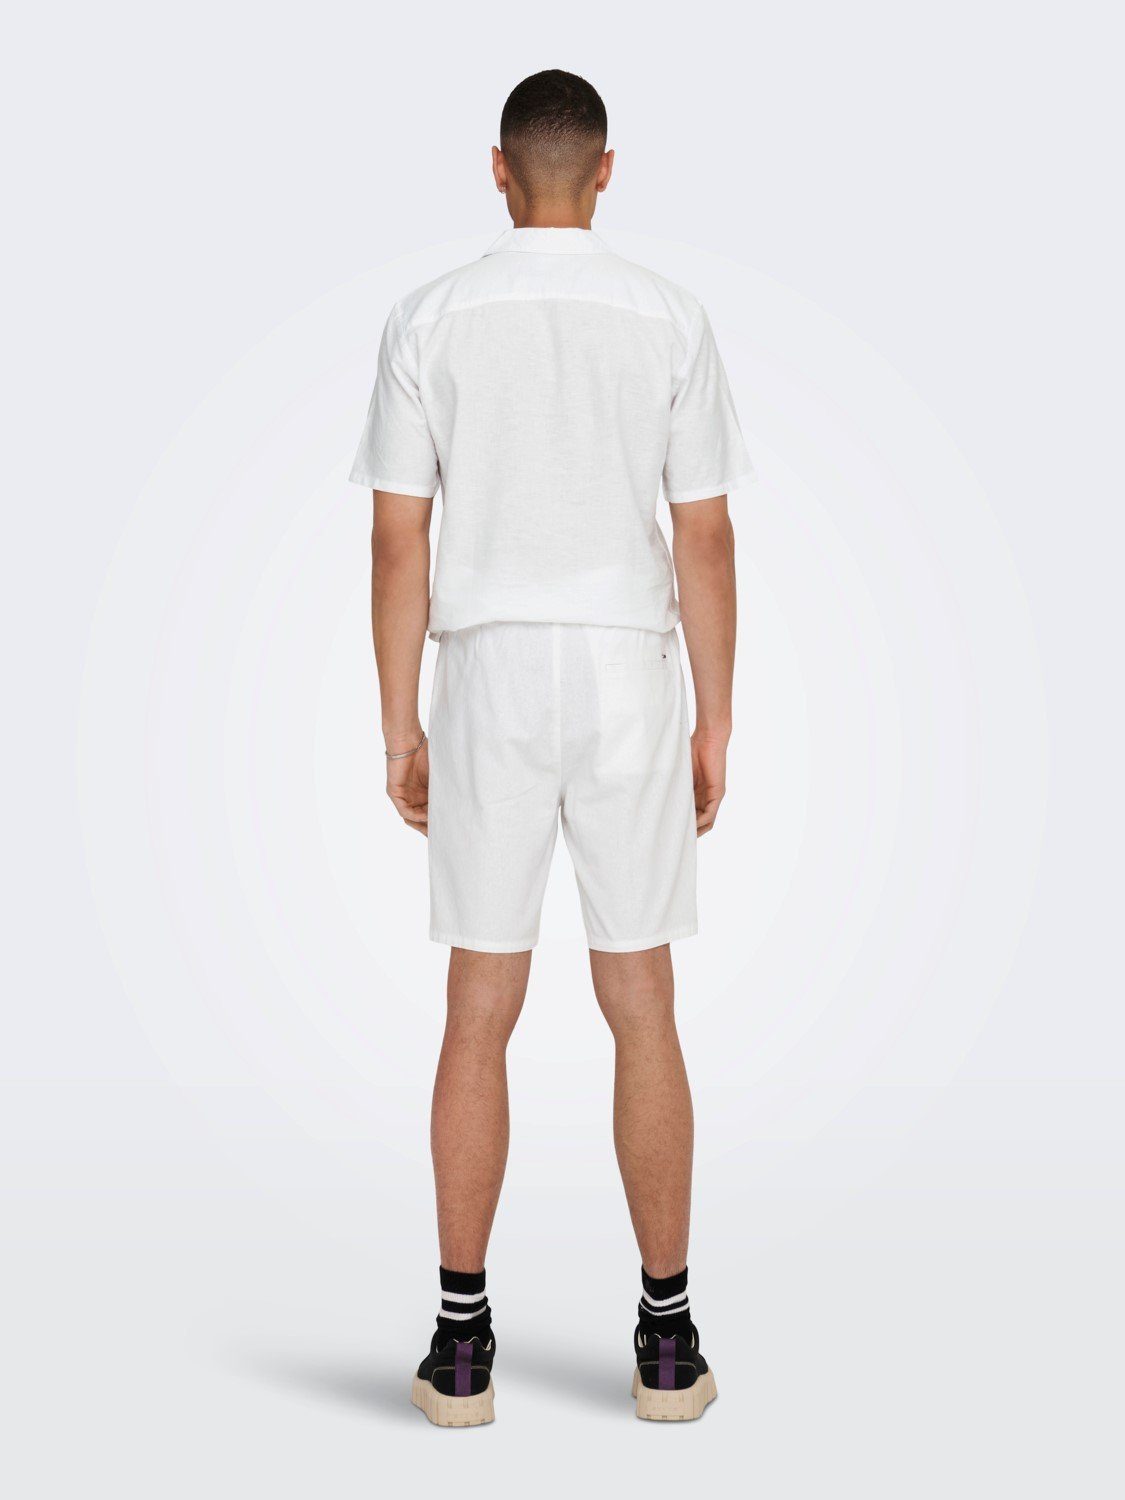 SONS ONSLINUS Leichte Weiß Hose Chinoshorts in Bermuda Stoff Shorts 5058 & ONLY